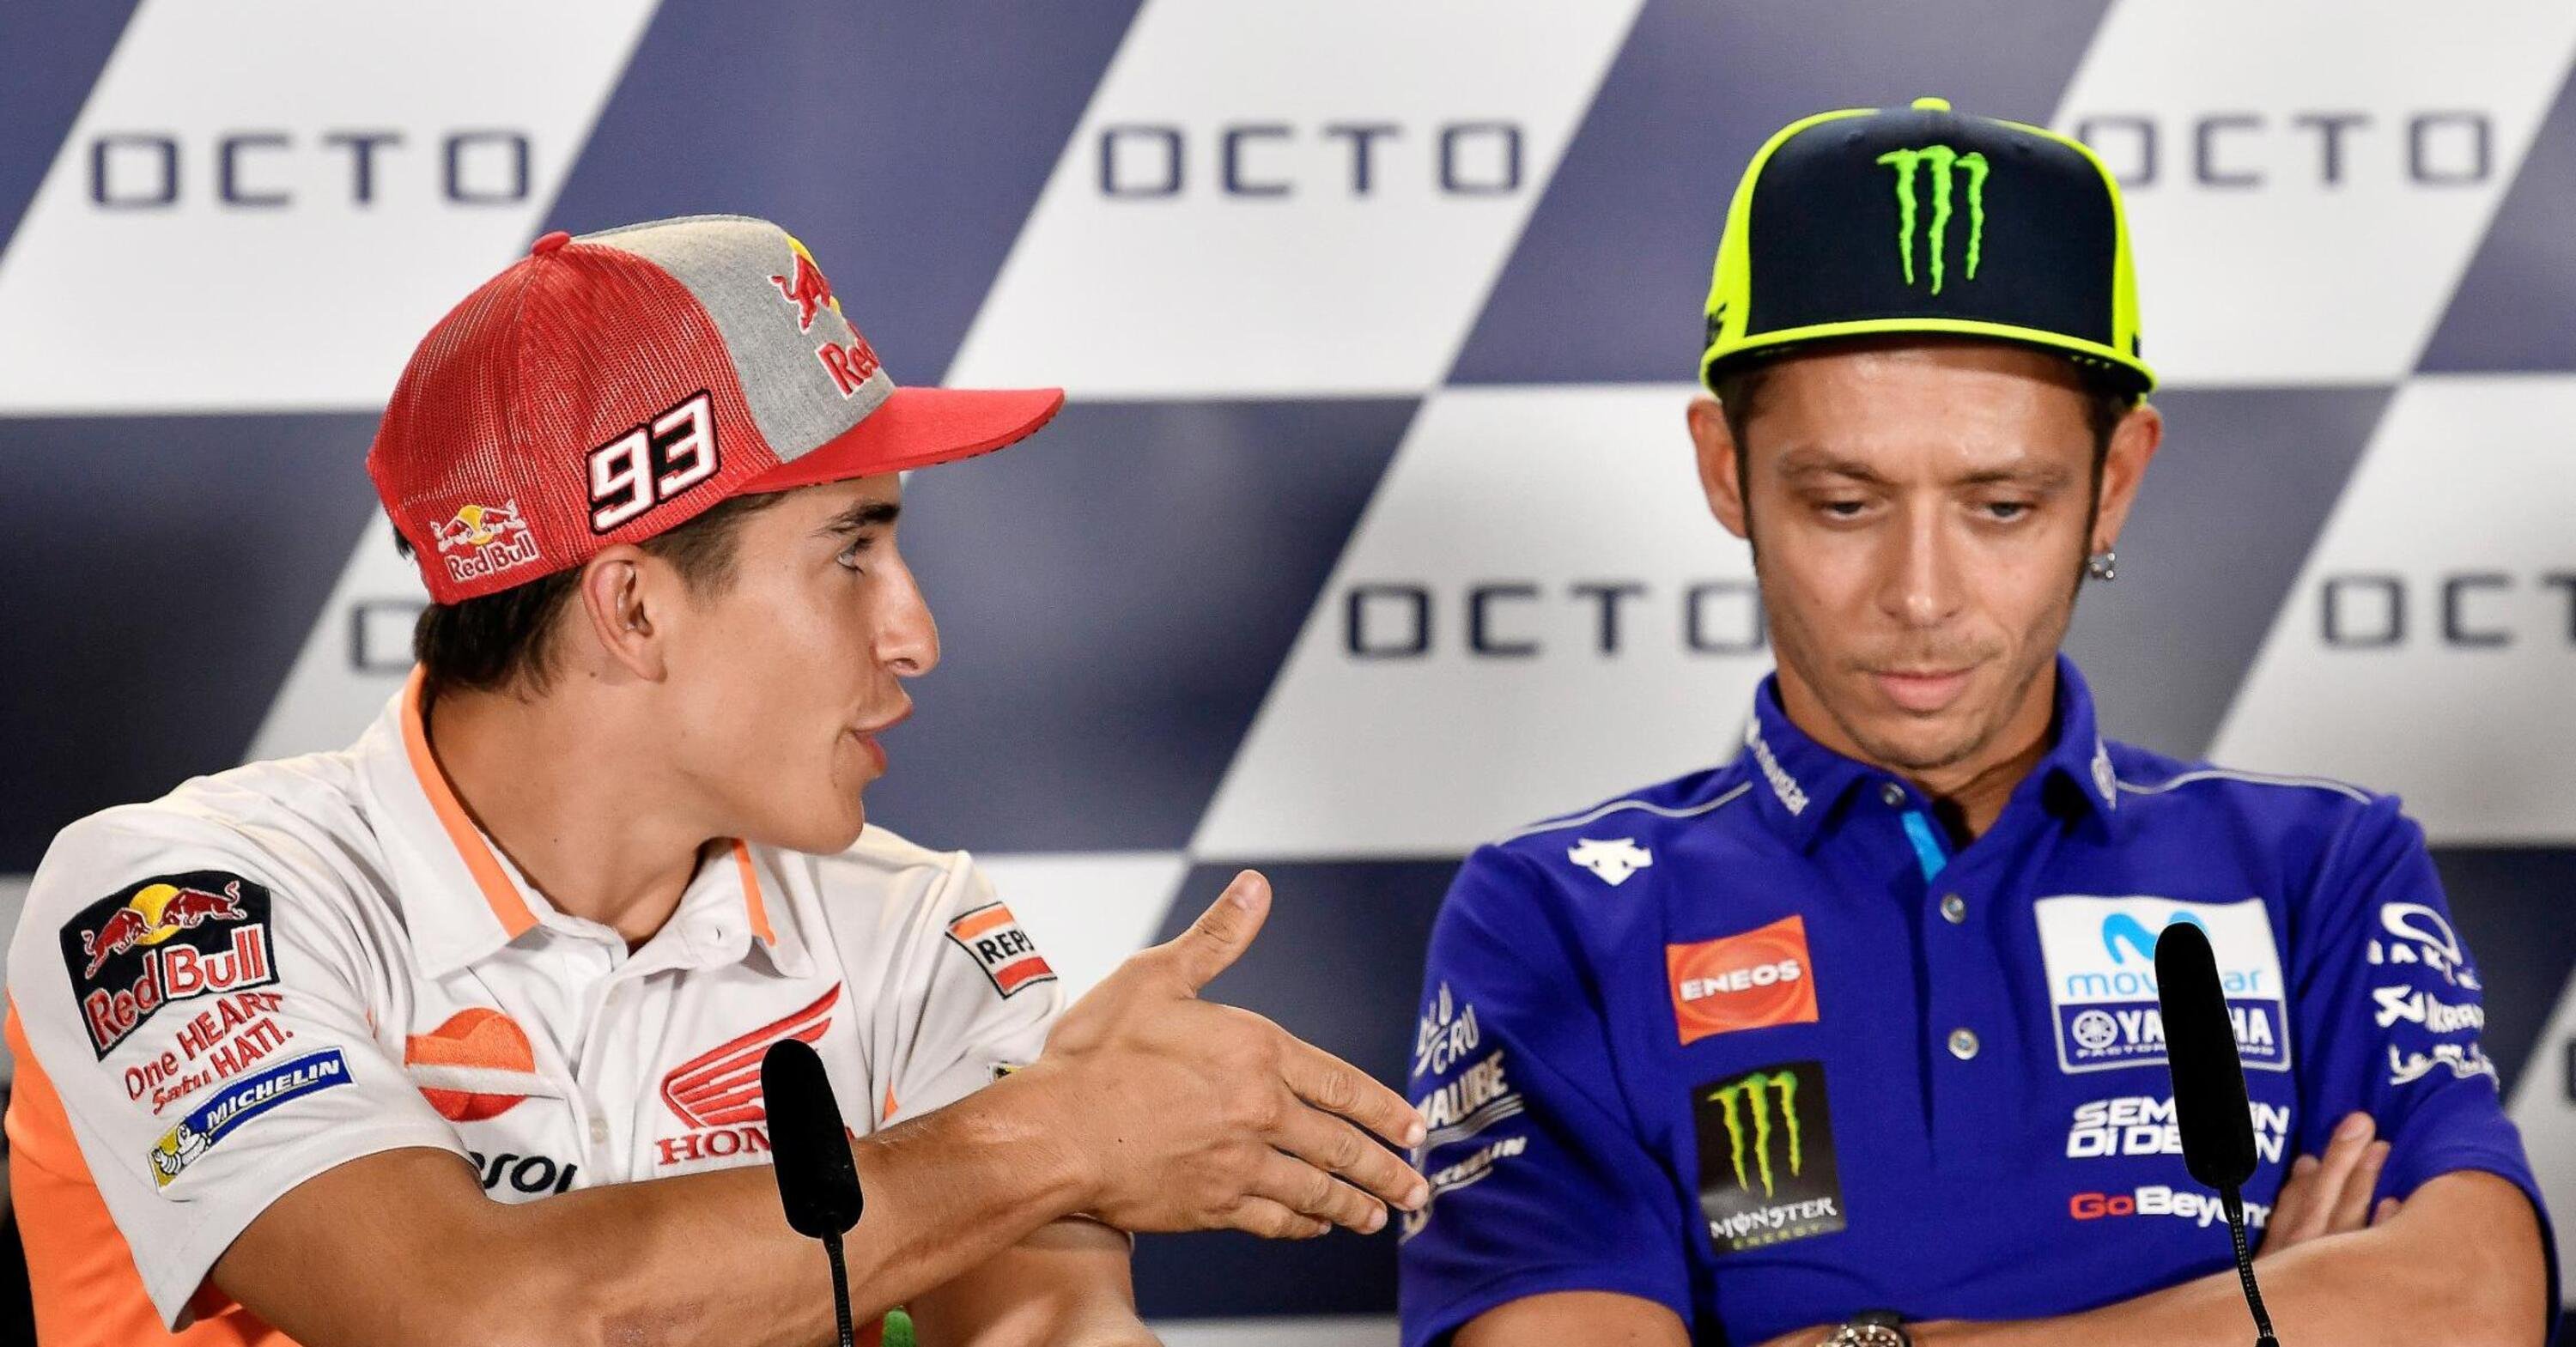 MotoGP 2018. Rossi non d&agrave; la mano a Marquez. Giusto o sbagliato?